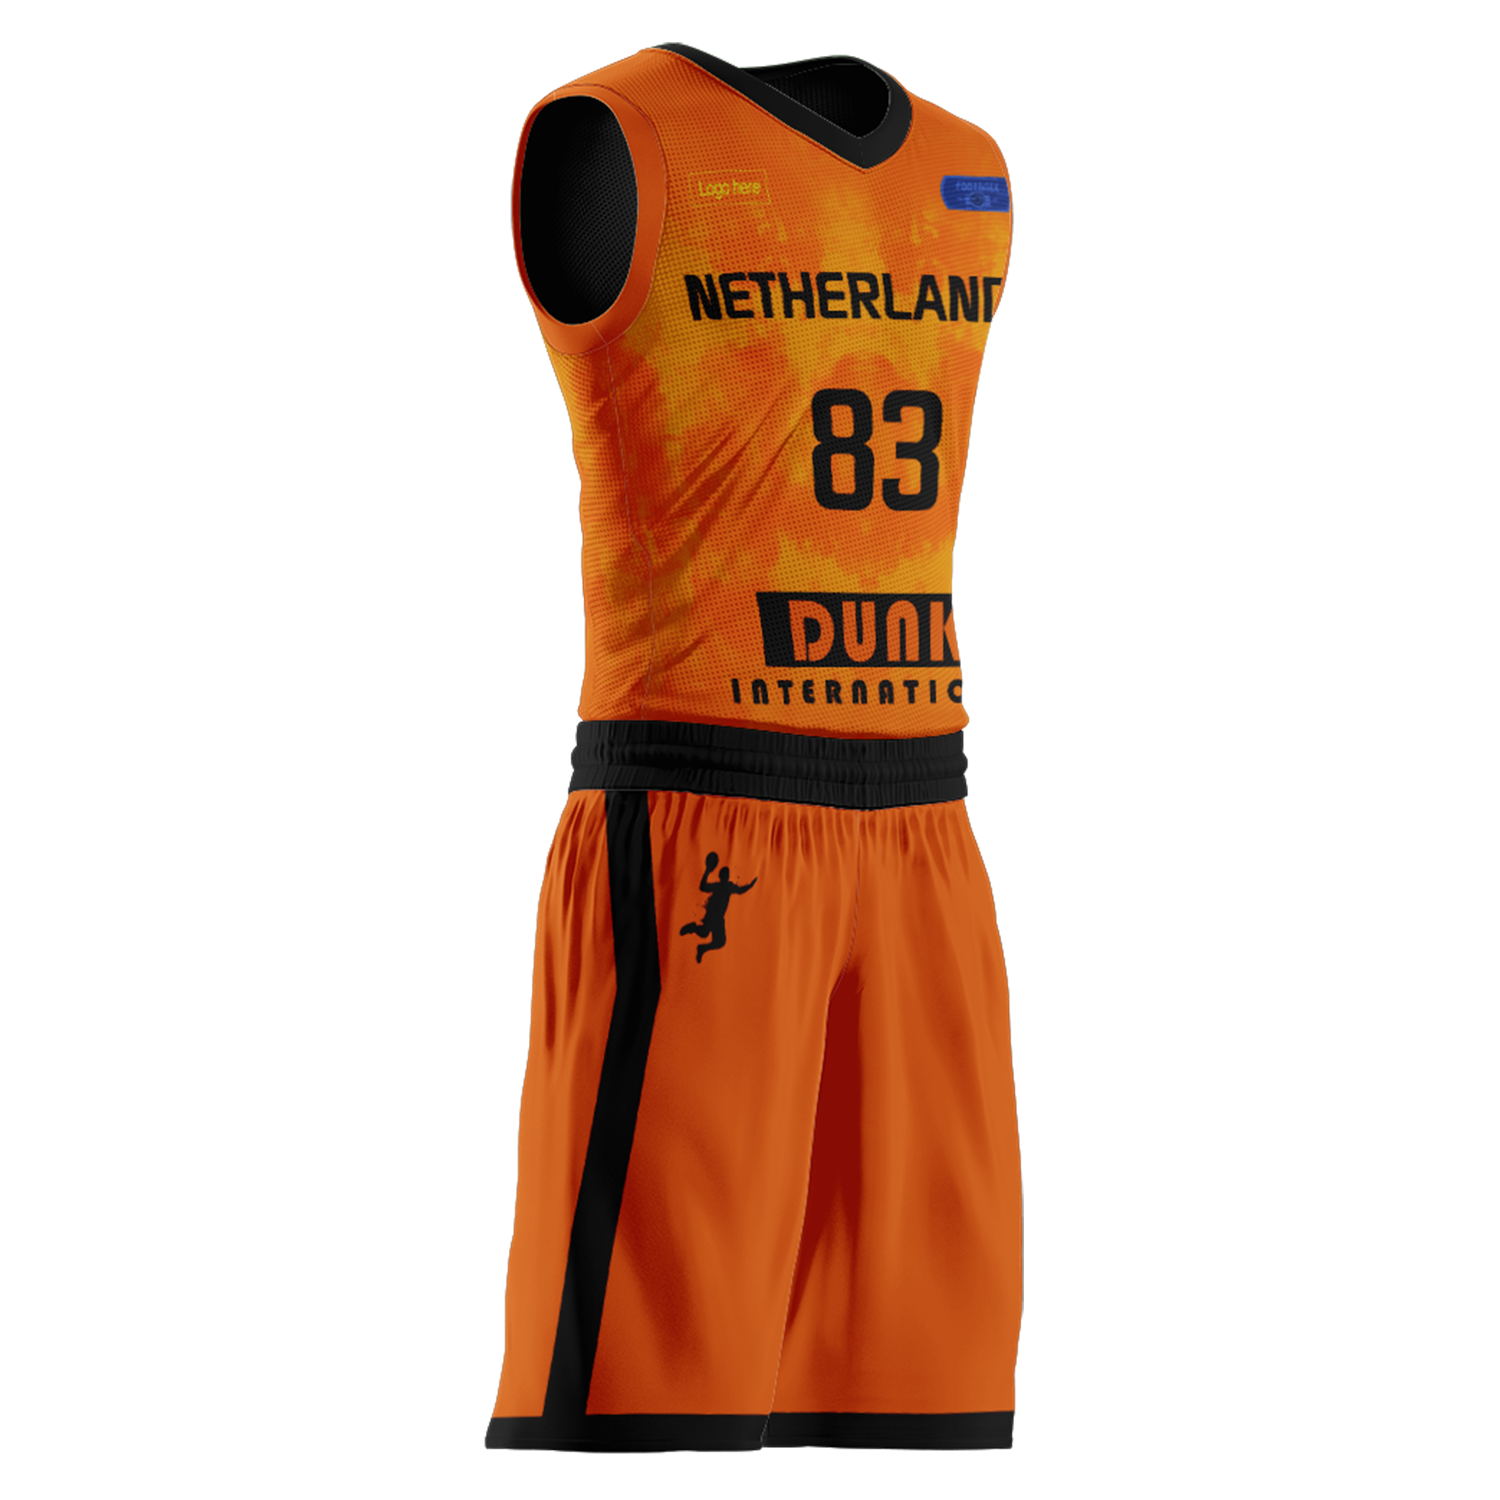 Trajes de baloncesto del equipo holandés personalizados